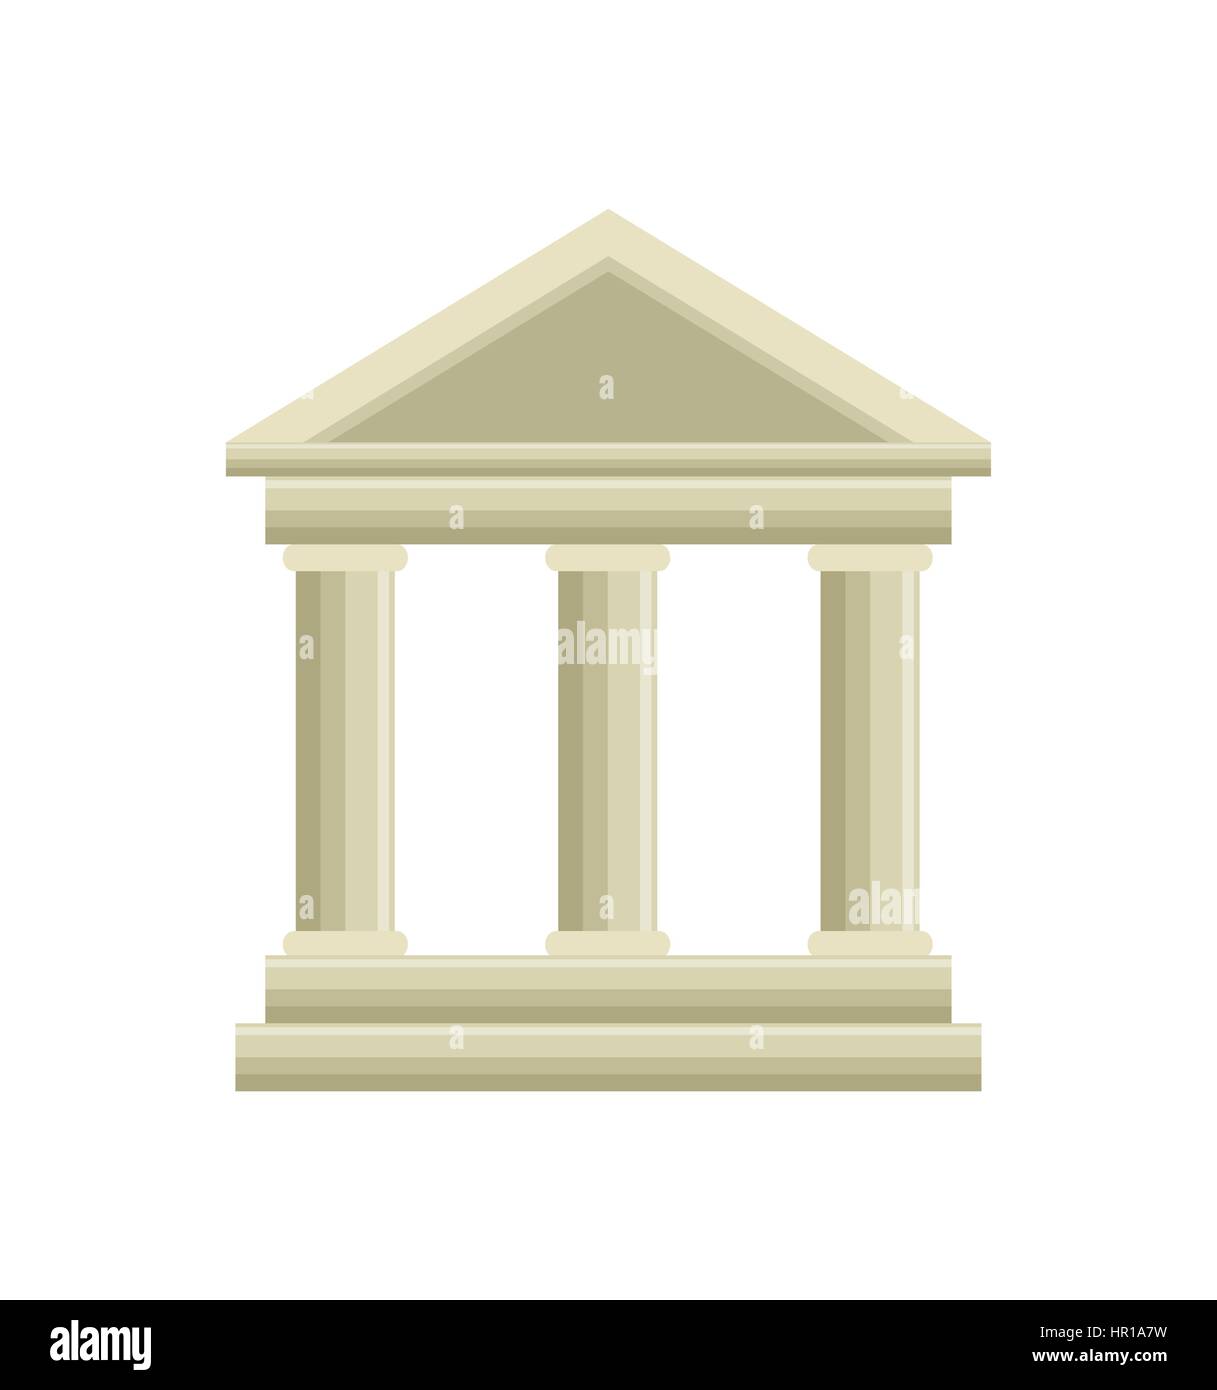 building roman columns icon Stock Vector